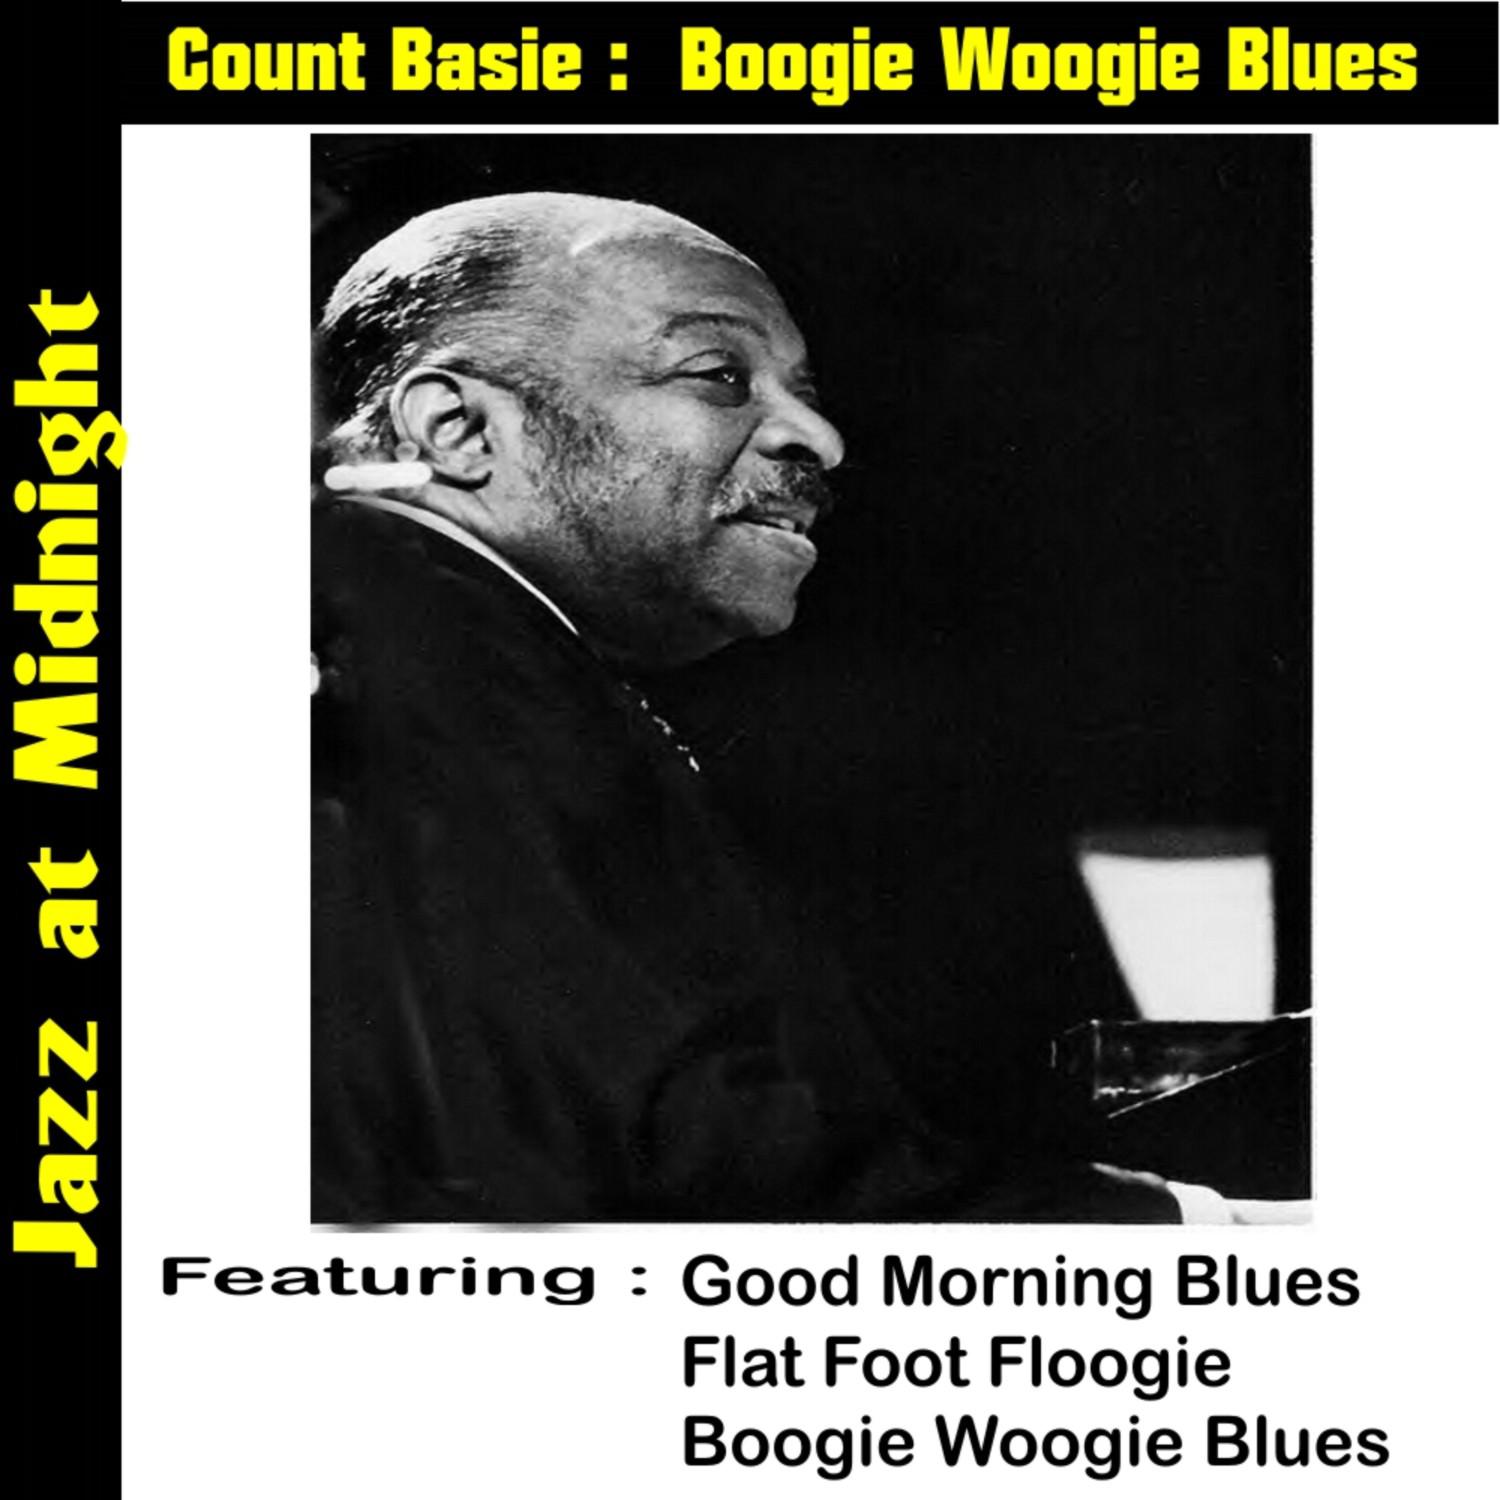 Boogie Woogie Blues